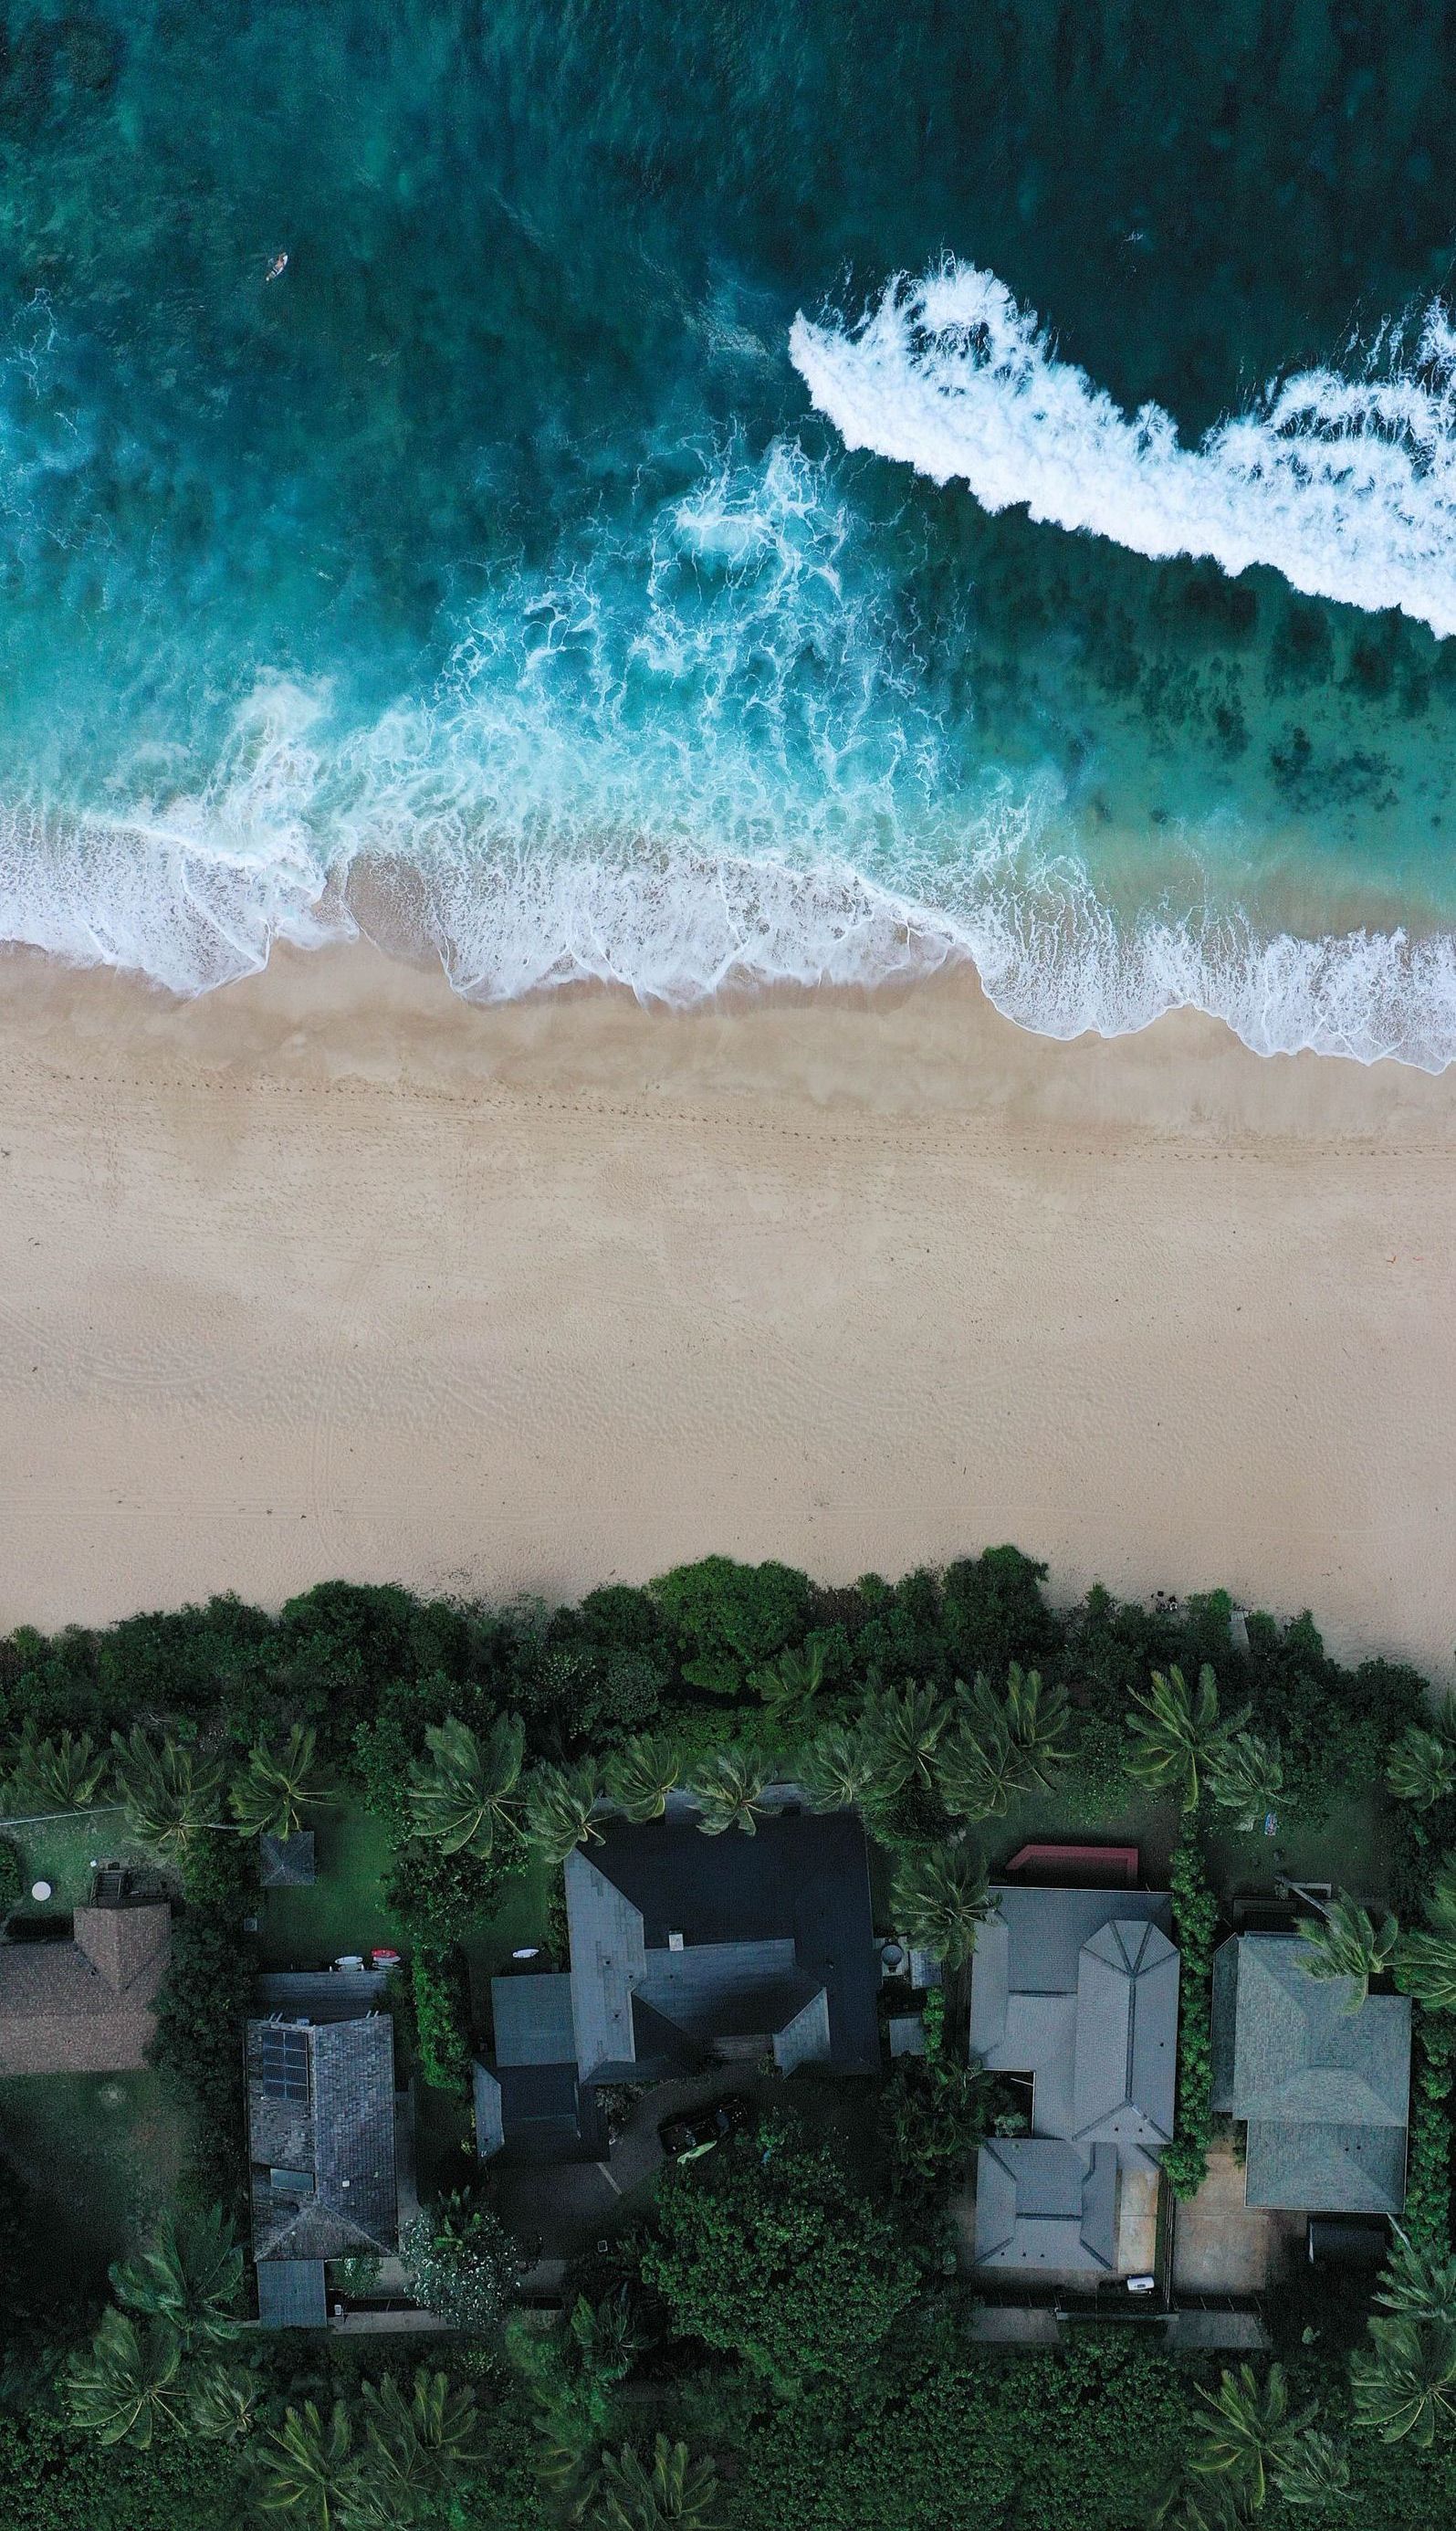 houses on a beach in hawaii